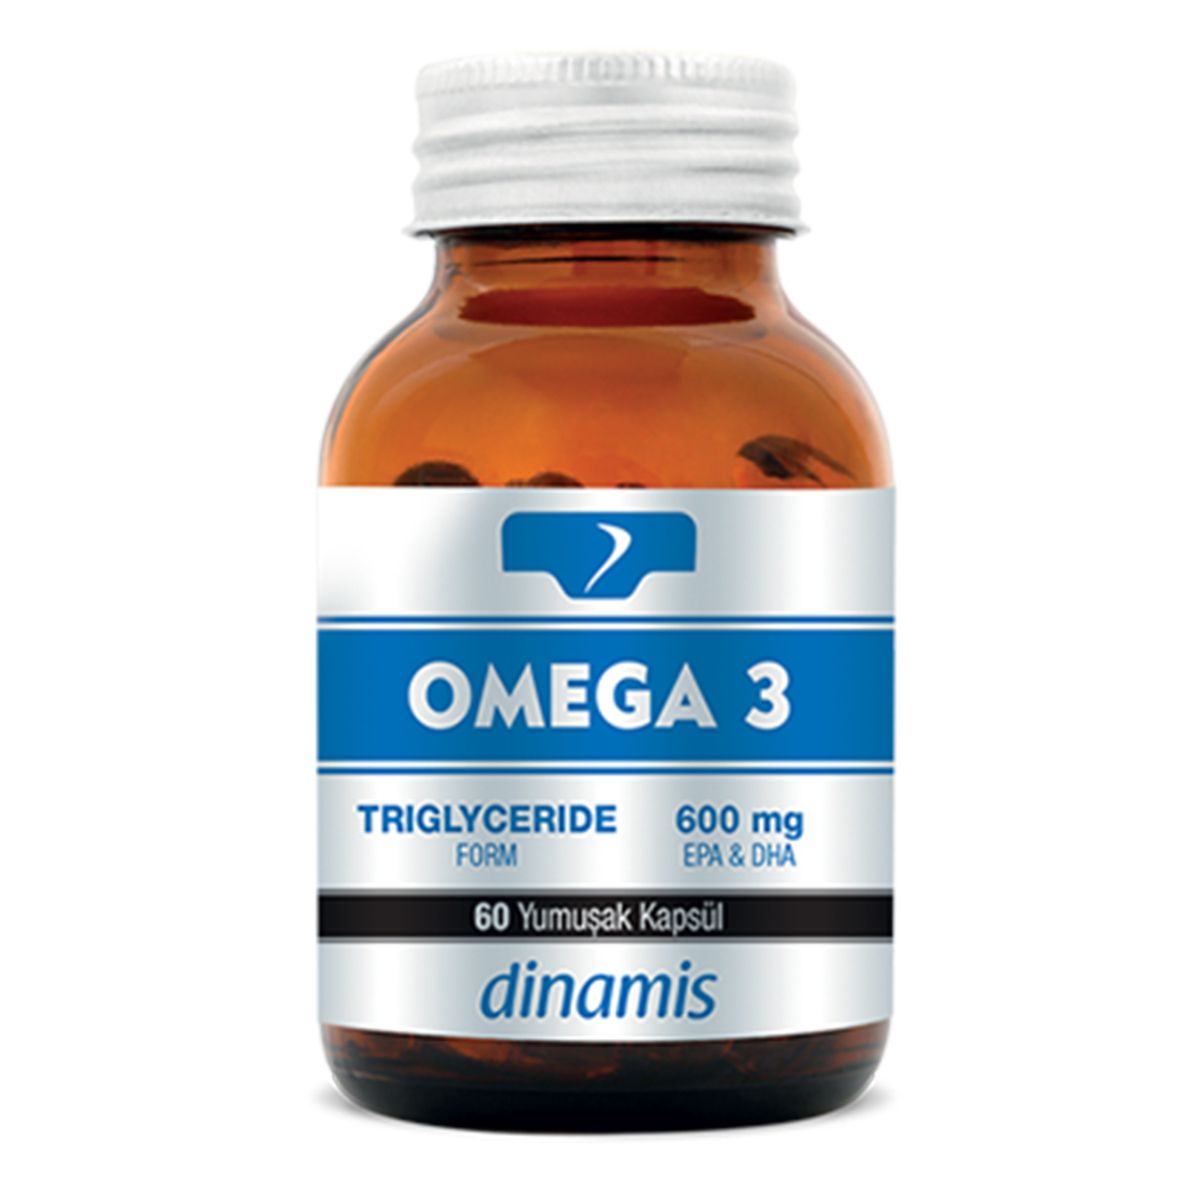 DİNAMİS Dinamis Omega 3 Takviye Edici Gıda 60 Yumuşak Kapsül